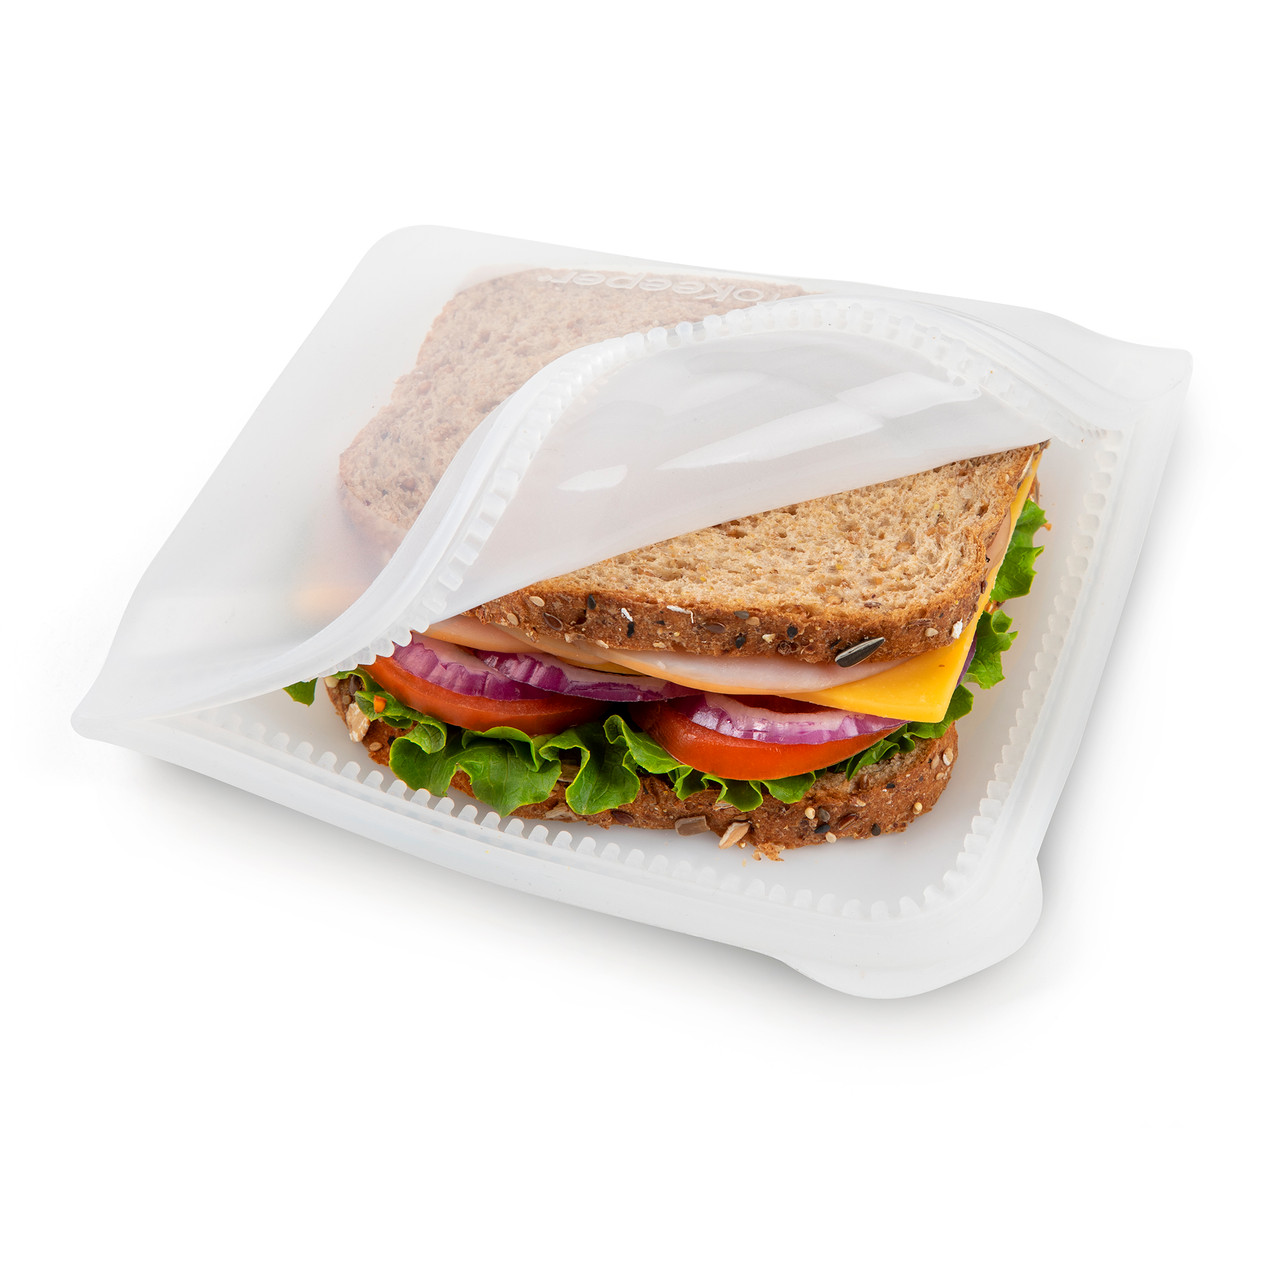 Wholesale Glad 29ct Sandwich Bag W/ Double Seal